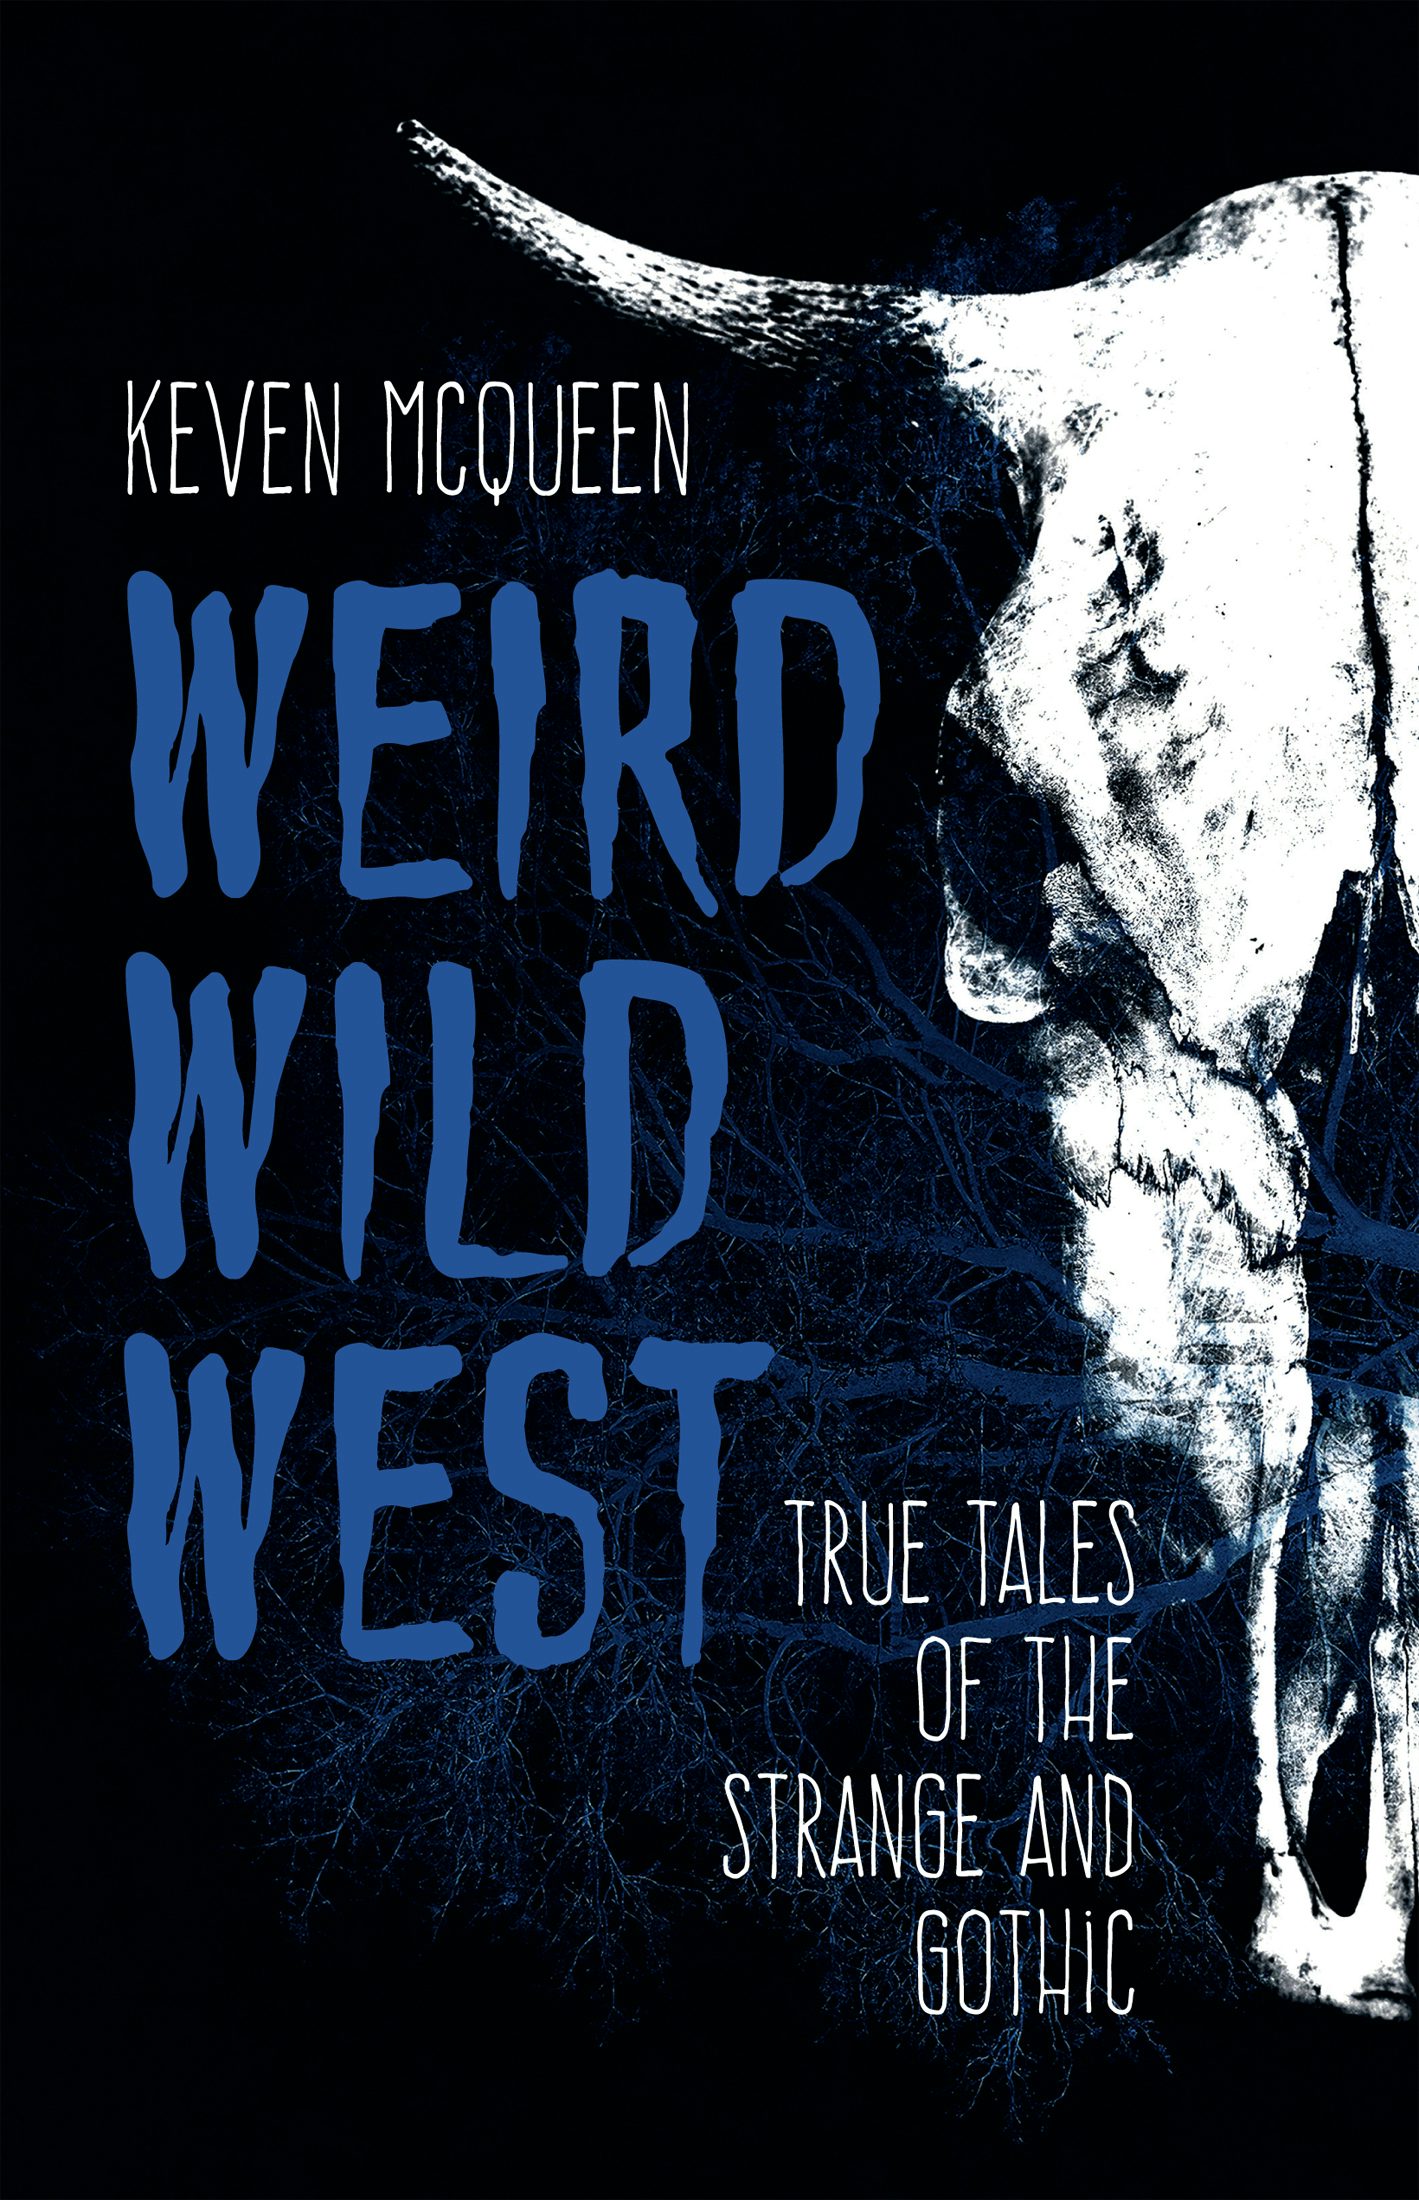 the weird west